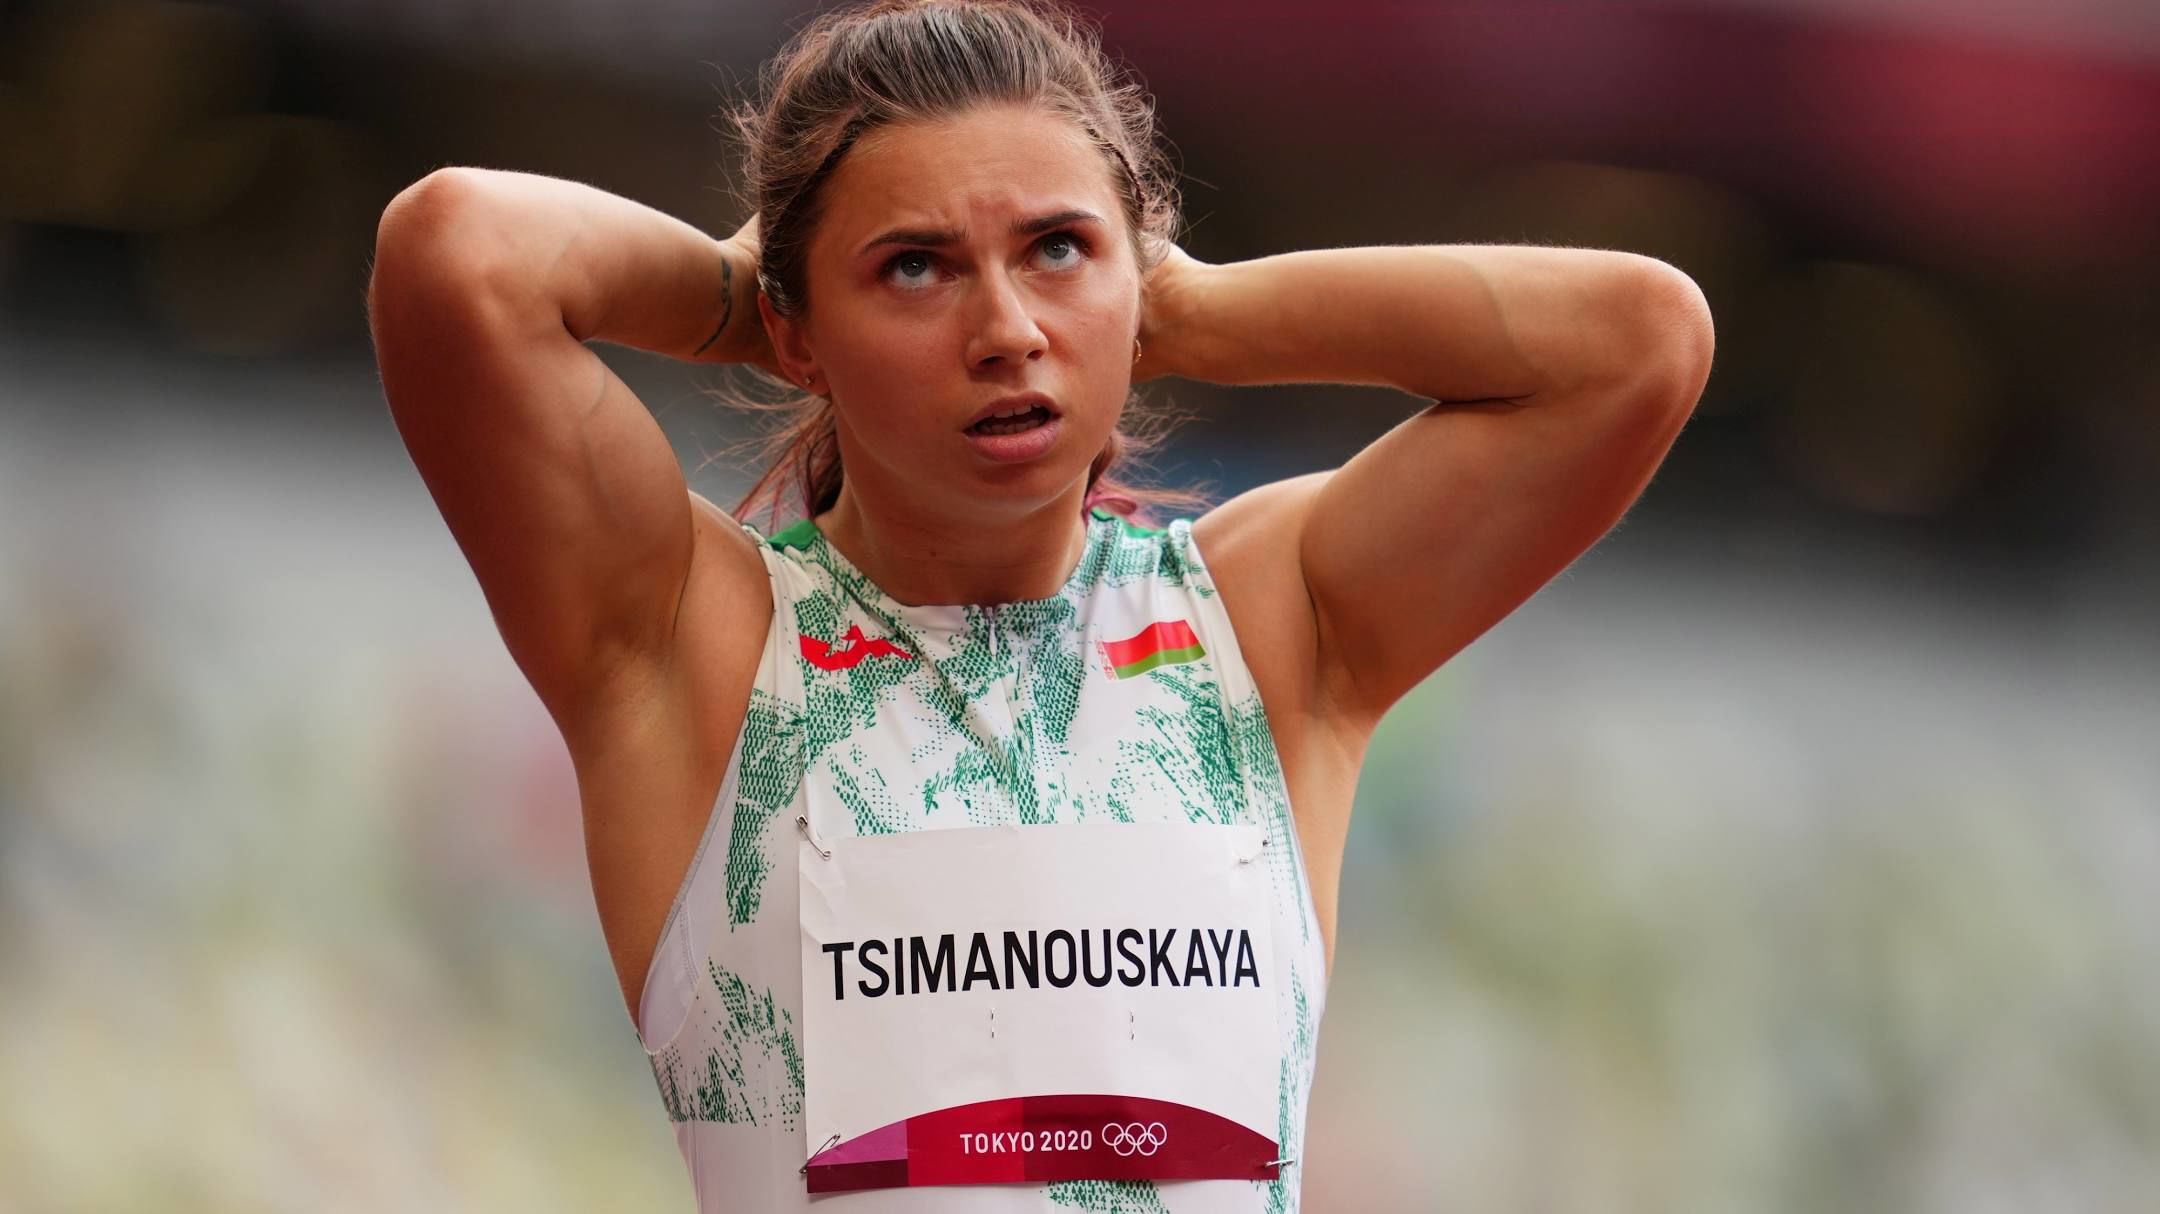 Белорусская легкоатлетка Тимановская: я удивлена, что эта ситуация стала политическим скандалом